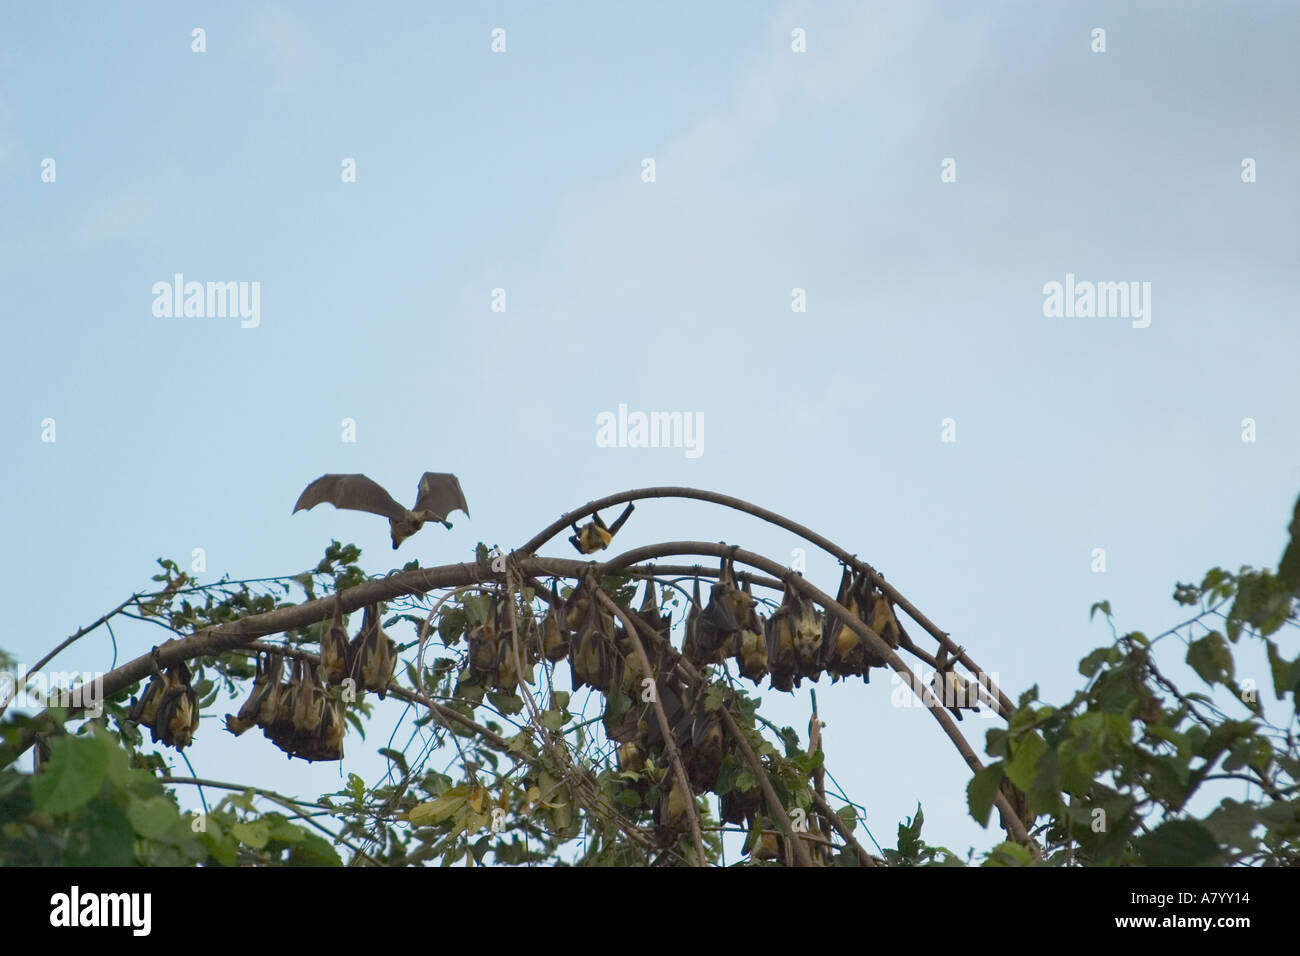 Paglia colorata pipistrelli della frutta o flying fox, tornando a casa a roost per appendere sospesa a testa in giù nella sommità di alti alberi nella foresta pluviale, Africa Occidentale, Ghana Foto Stock